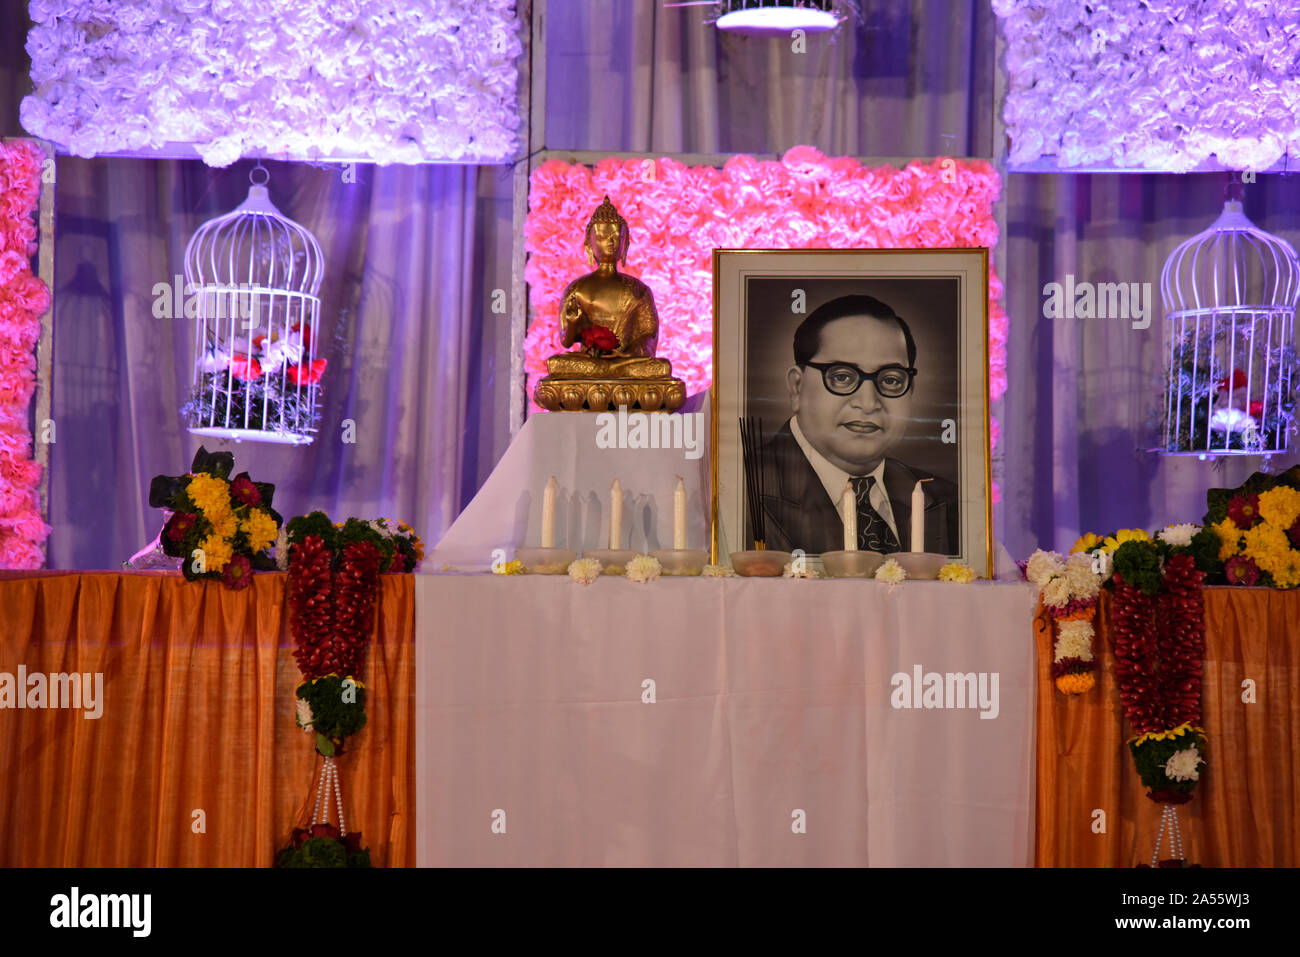 Une idole du seigneur Bouddha dans la position d'assise et un dessin du Dr Babasaheb Ambedkar, affichée sur scène lors d'une cérémonie de mariage, Maharashtra, Inde Banque D'Images